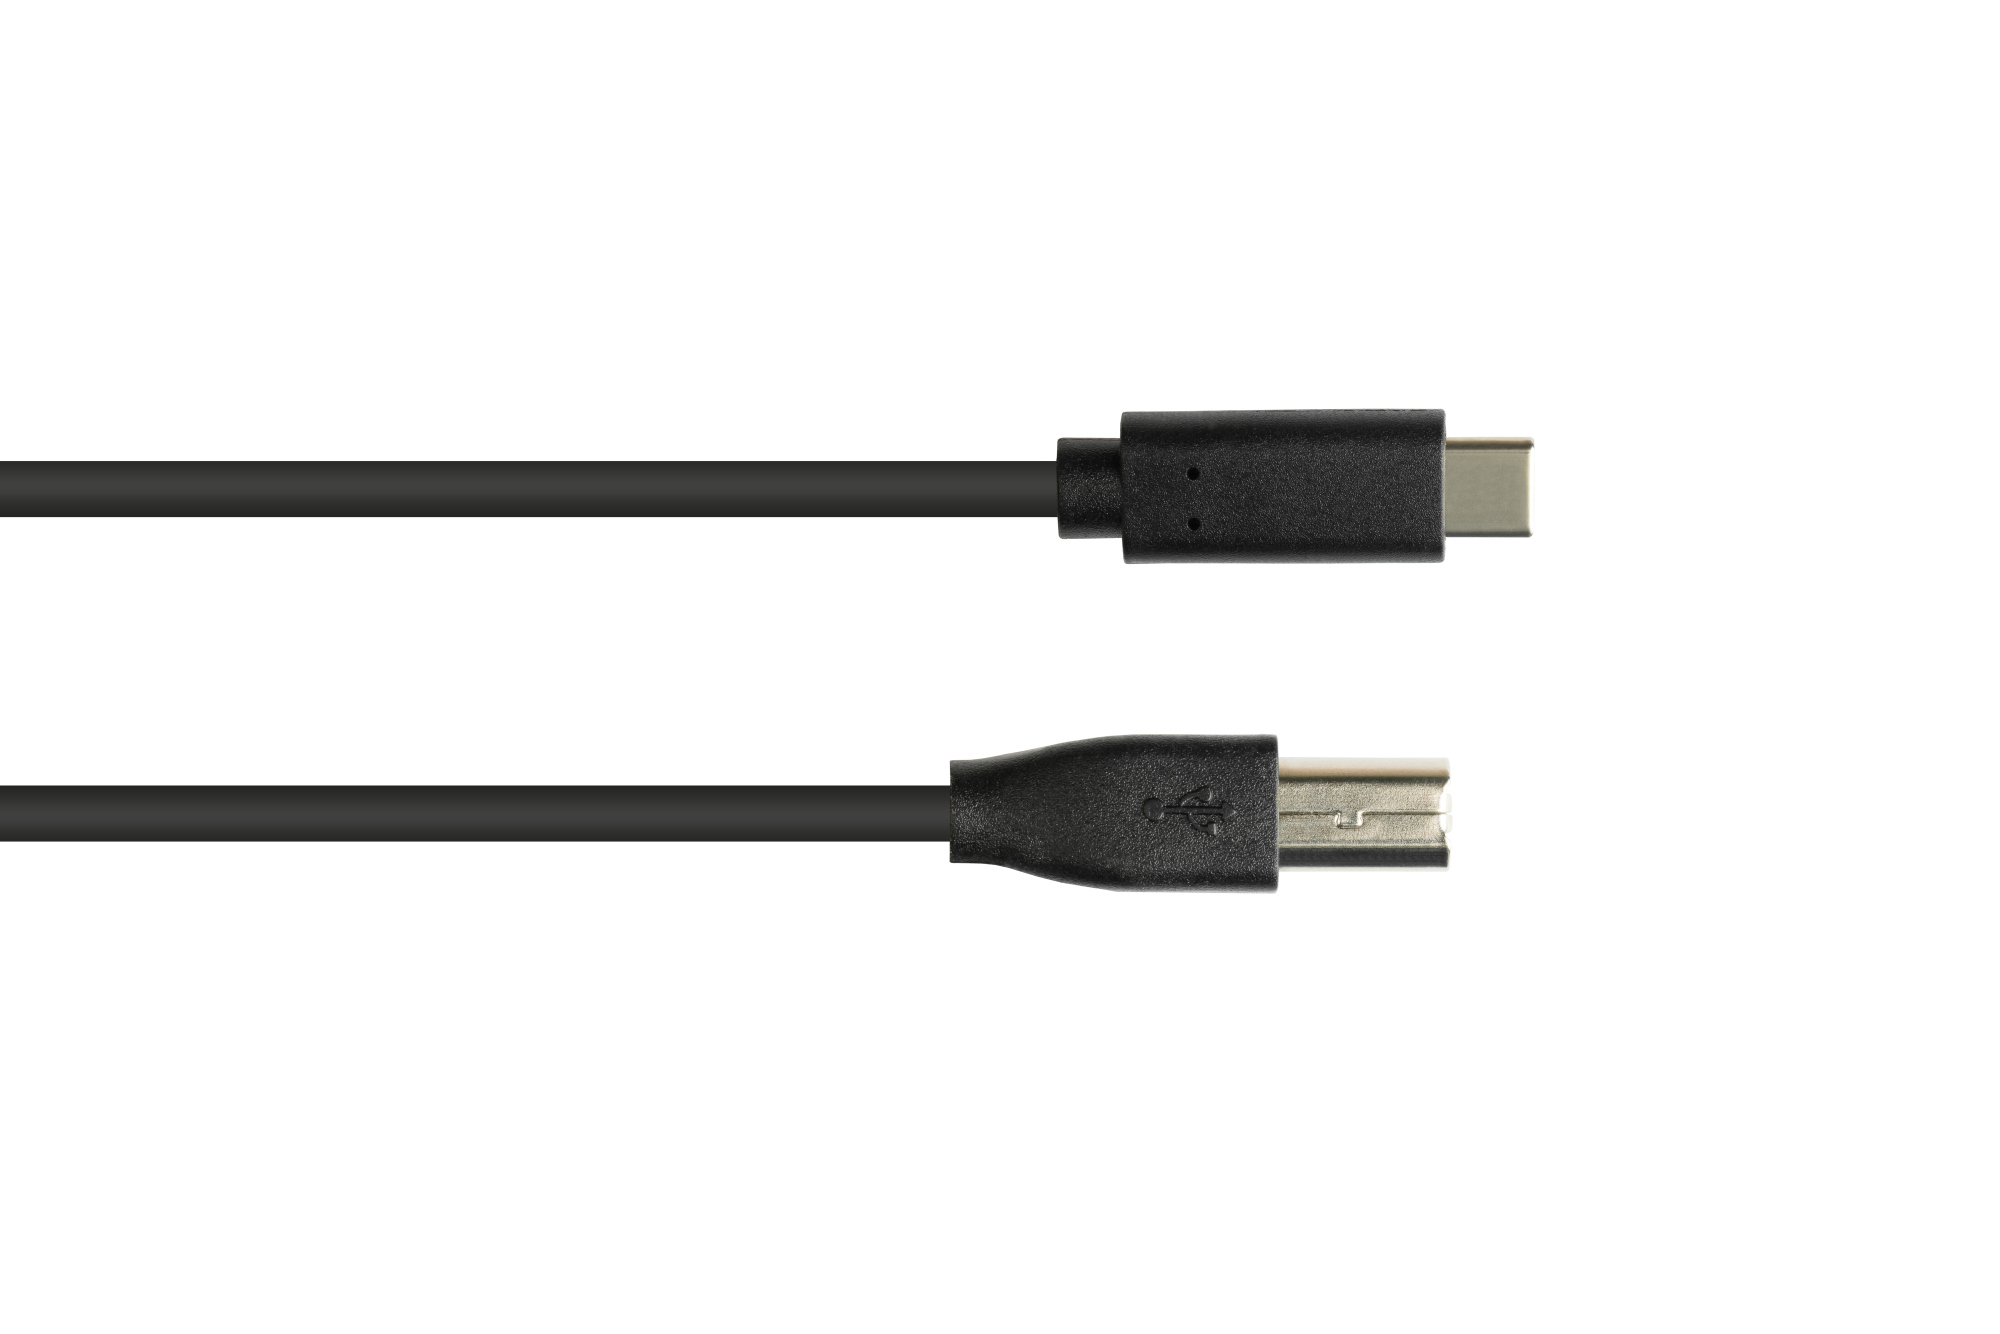 Anschlusskabel USB 2.0, USB-C™ Stecker an USB 2.0 B Stecker, CU, schwarz, 3m, Good Connections®